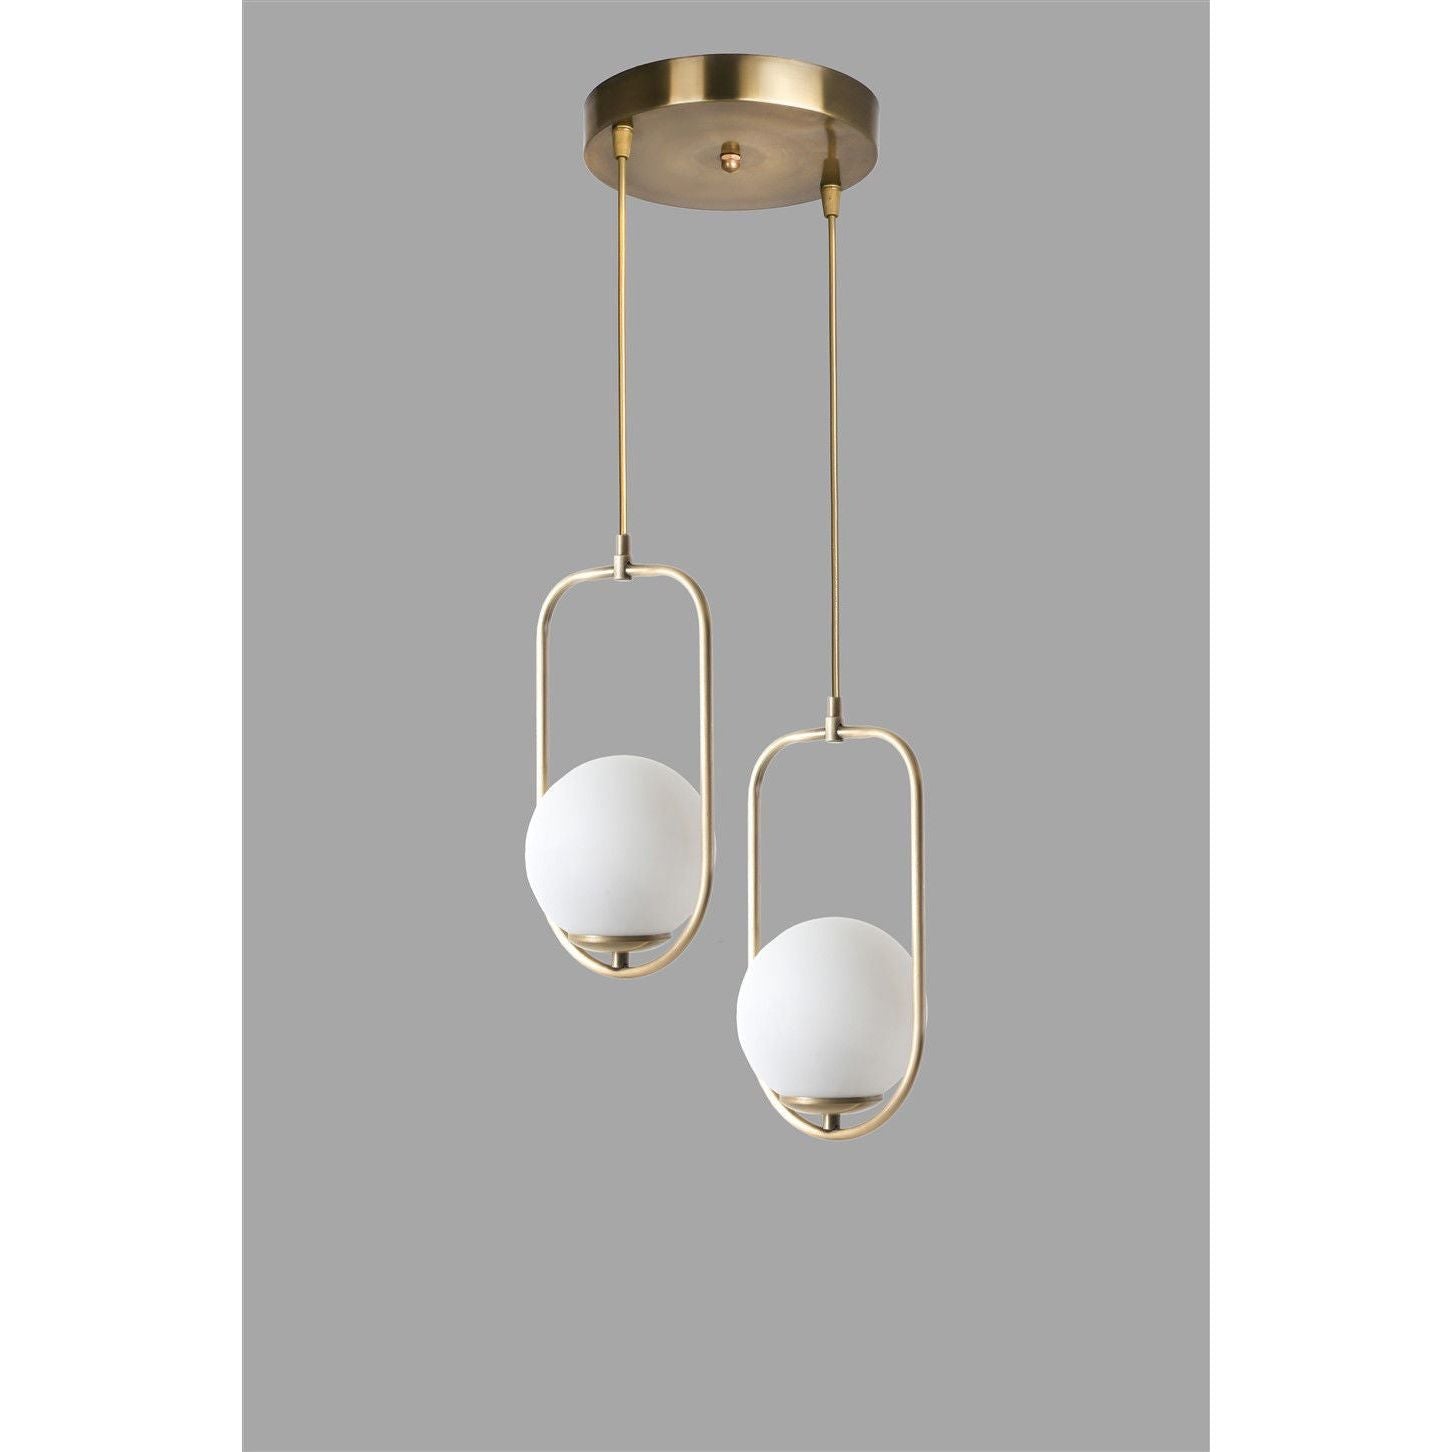 Lampa suspendata Ahu, 2 becuri, cadru metalic/sticla, auriu/alb, 70x25 cm